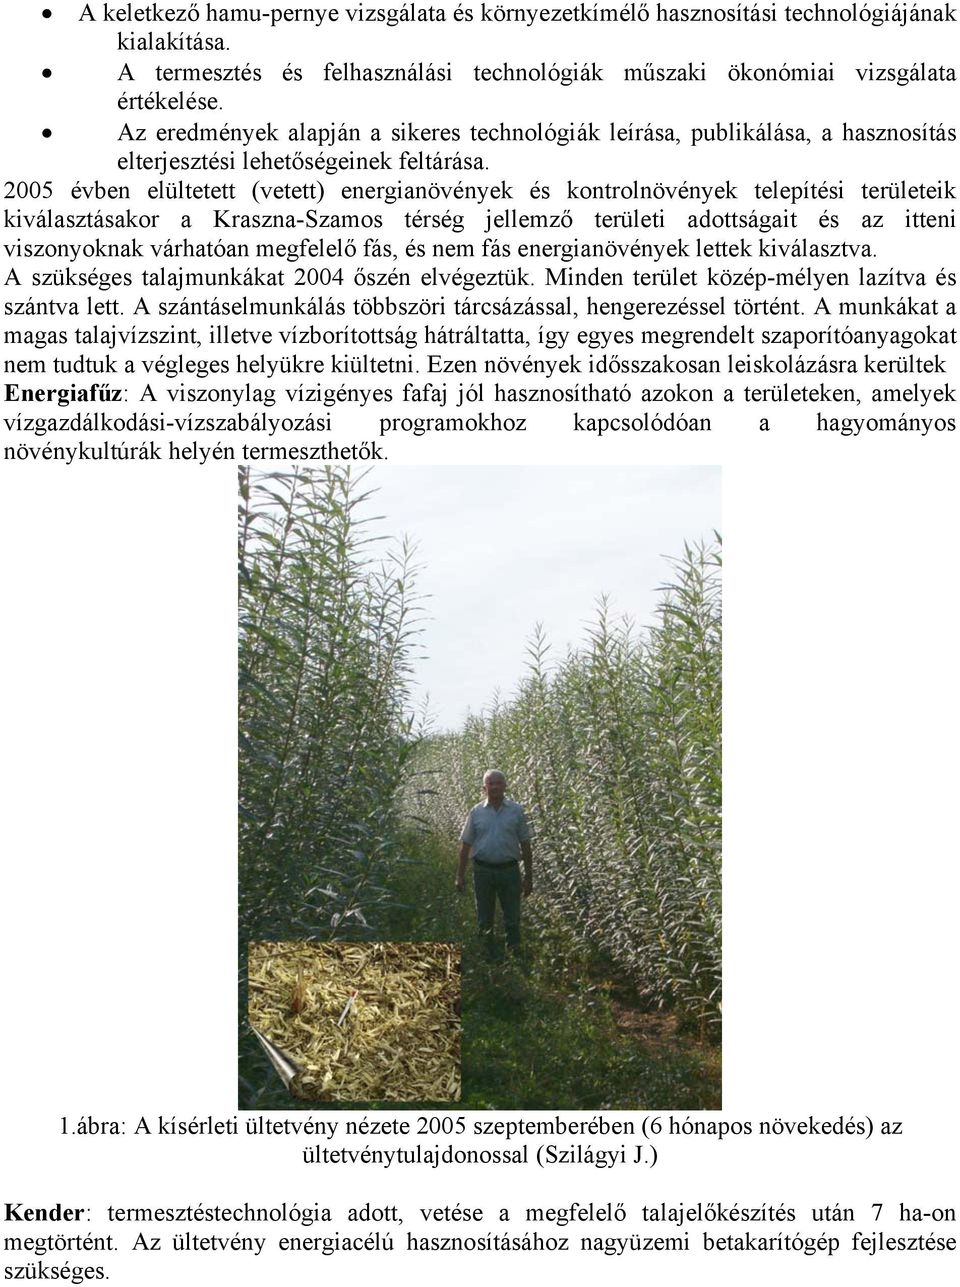 2005 évben elültetett (vetett) energianövények és kontrolnövények telepítési területeik kiválasztásakor a Kraszna-Szamos térség jellemző területi adottságait és az itteni viszonyoknak várhatóan